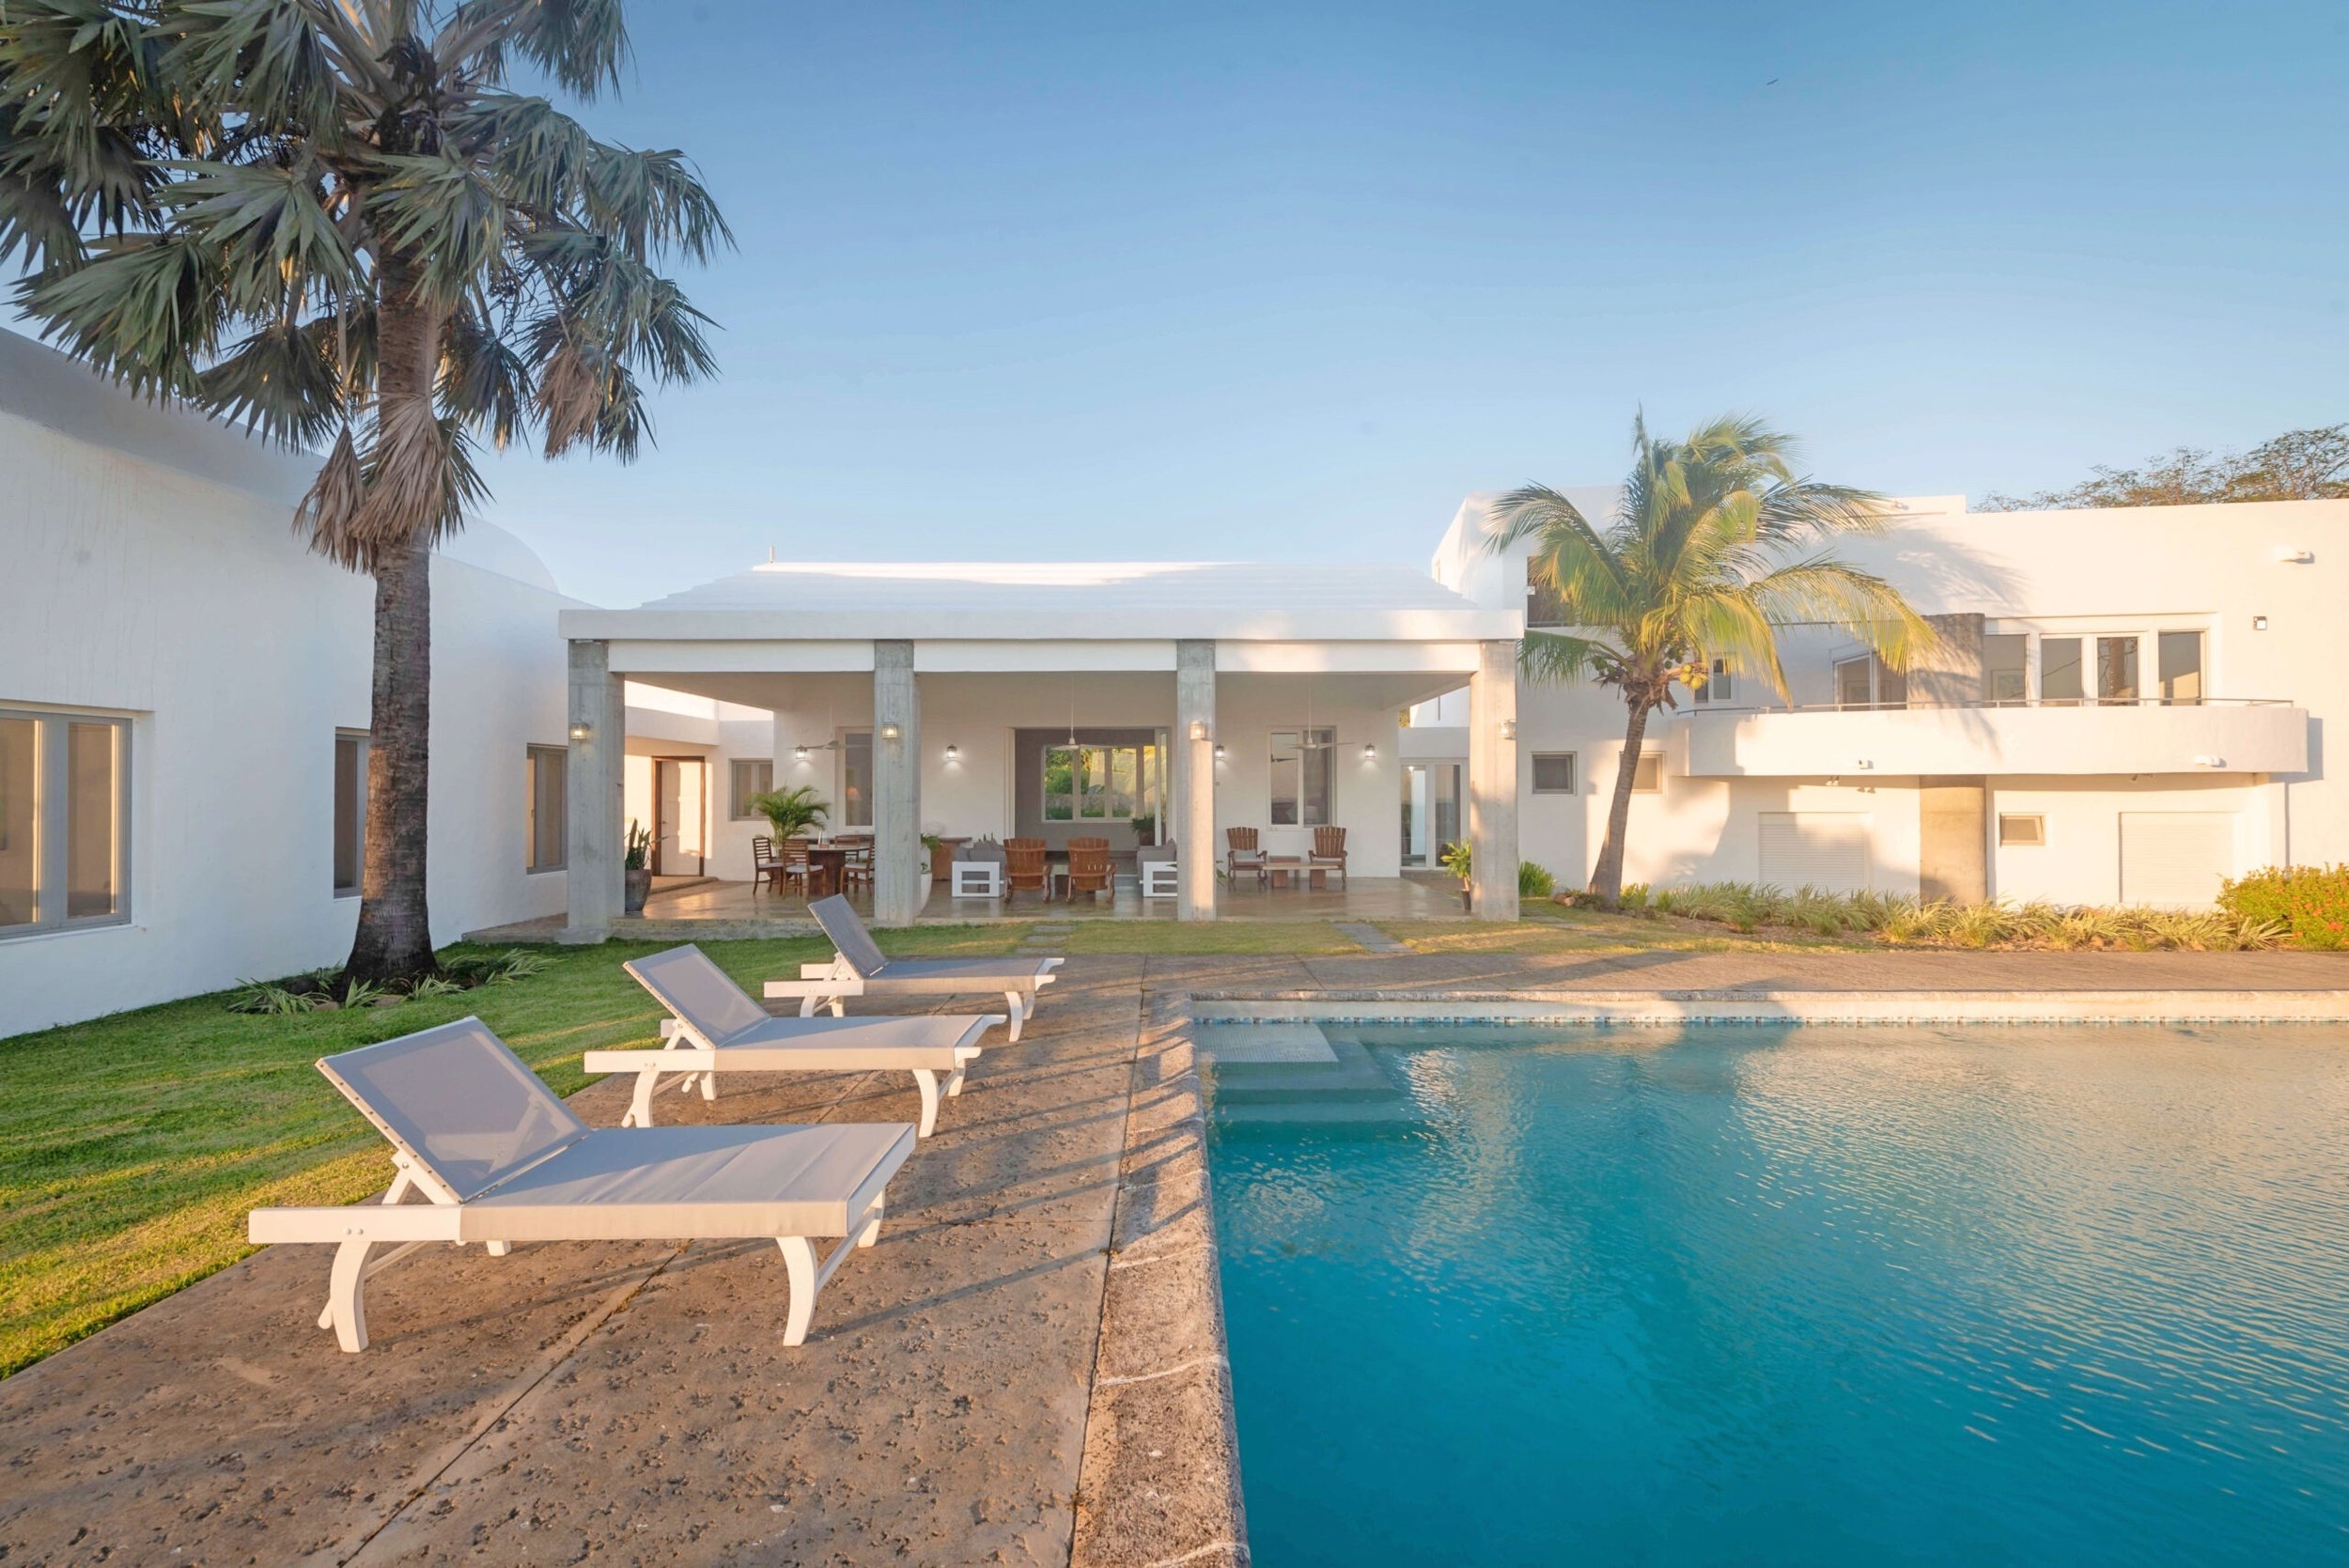 Luxury Home For Sale San Juan Del Sur Nicaragua Real Estate Property 14.jpg